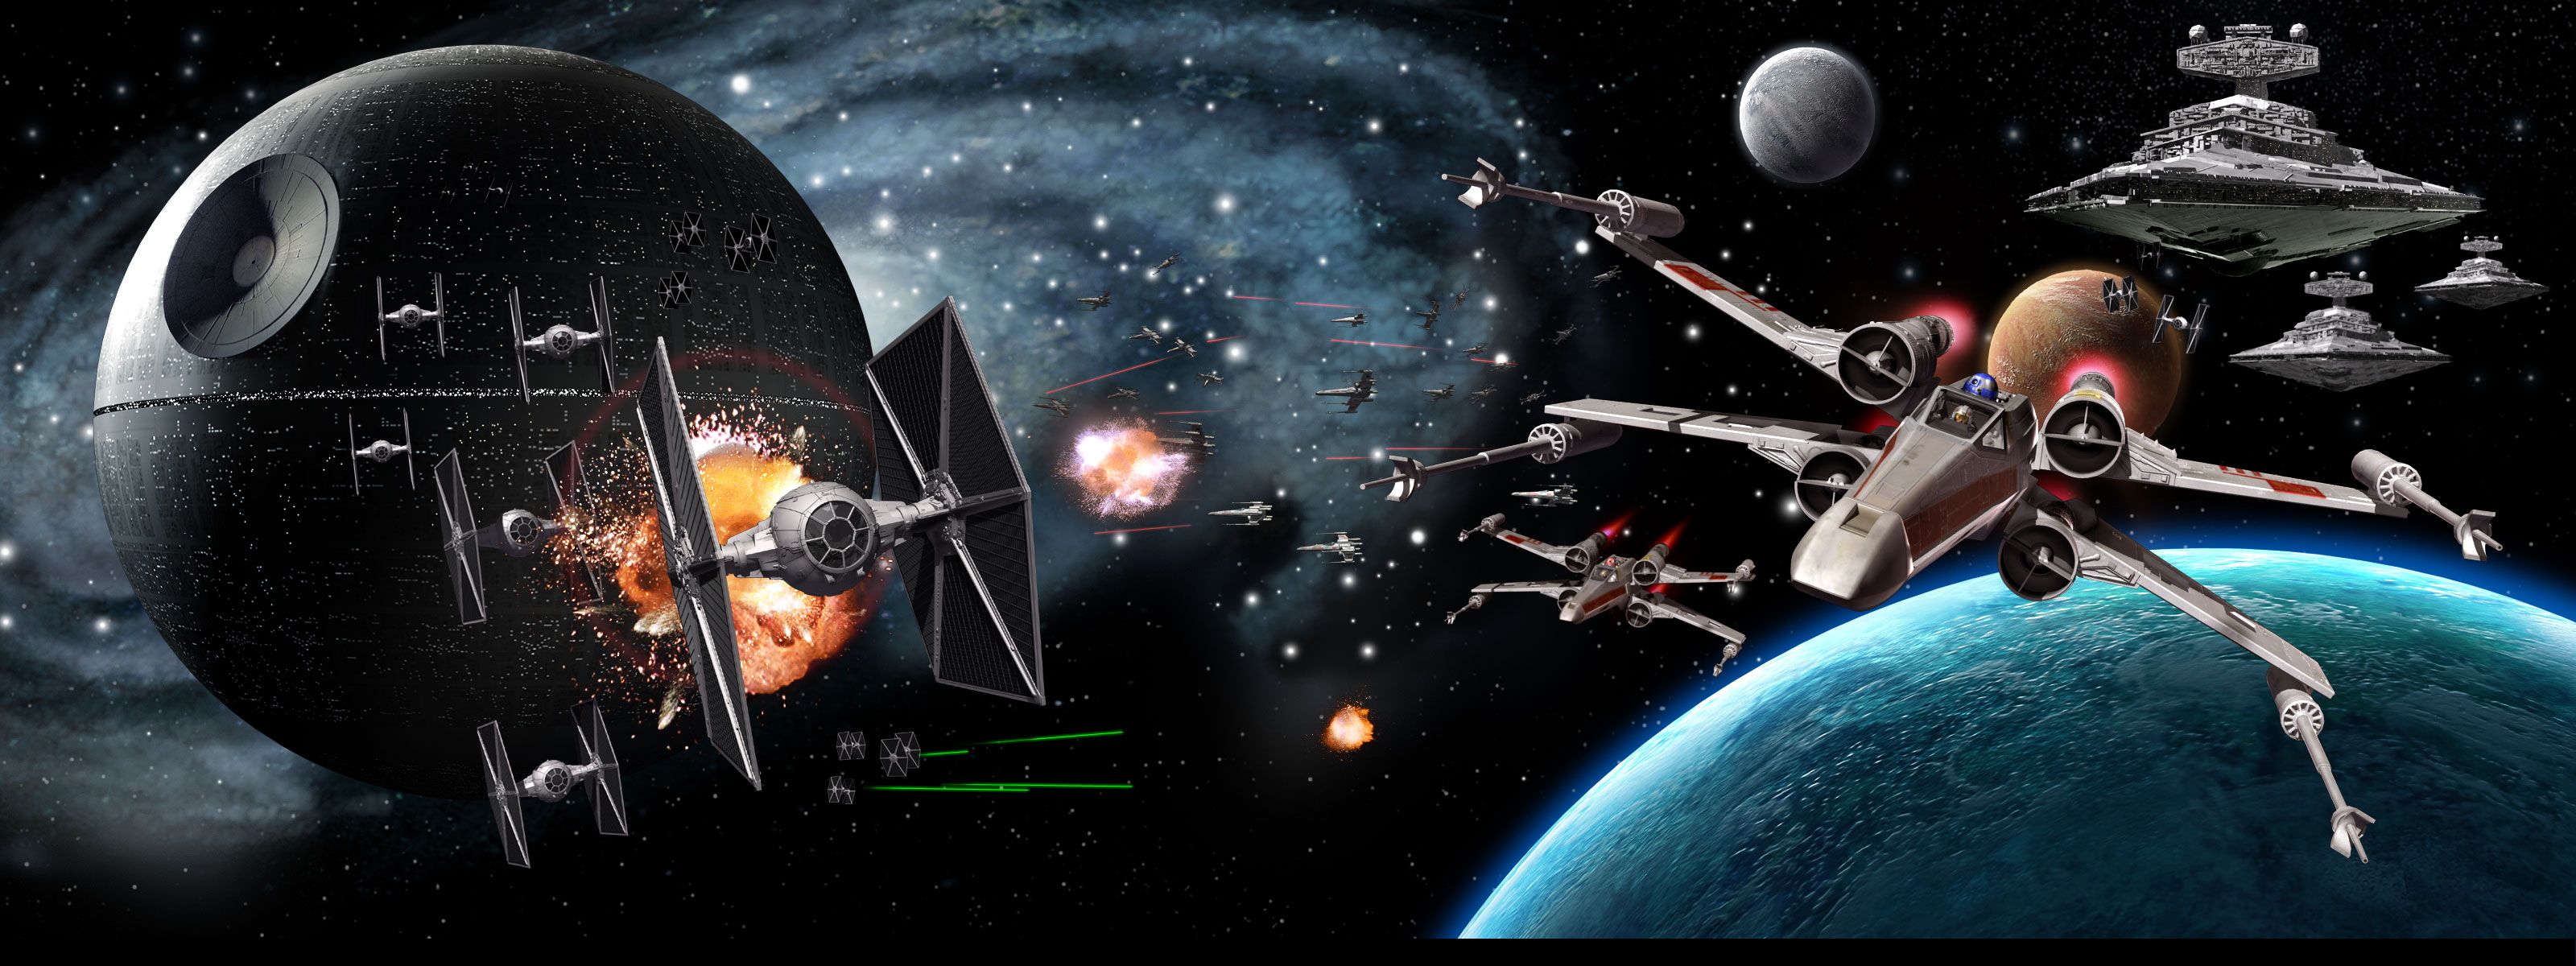 Death Star Star Destroyer Star Wars Tie Fighter X Wing 3200x1200